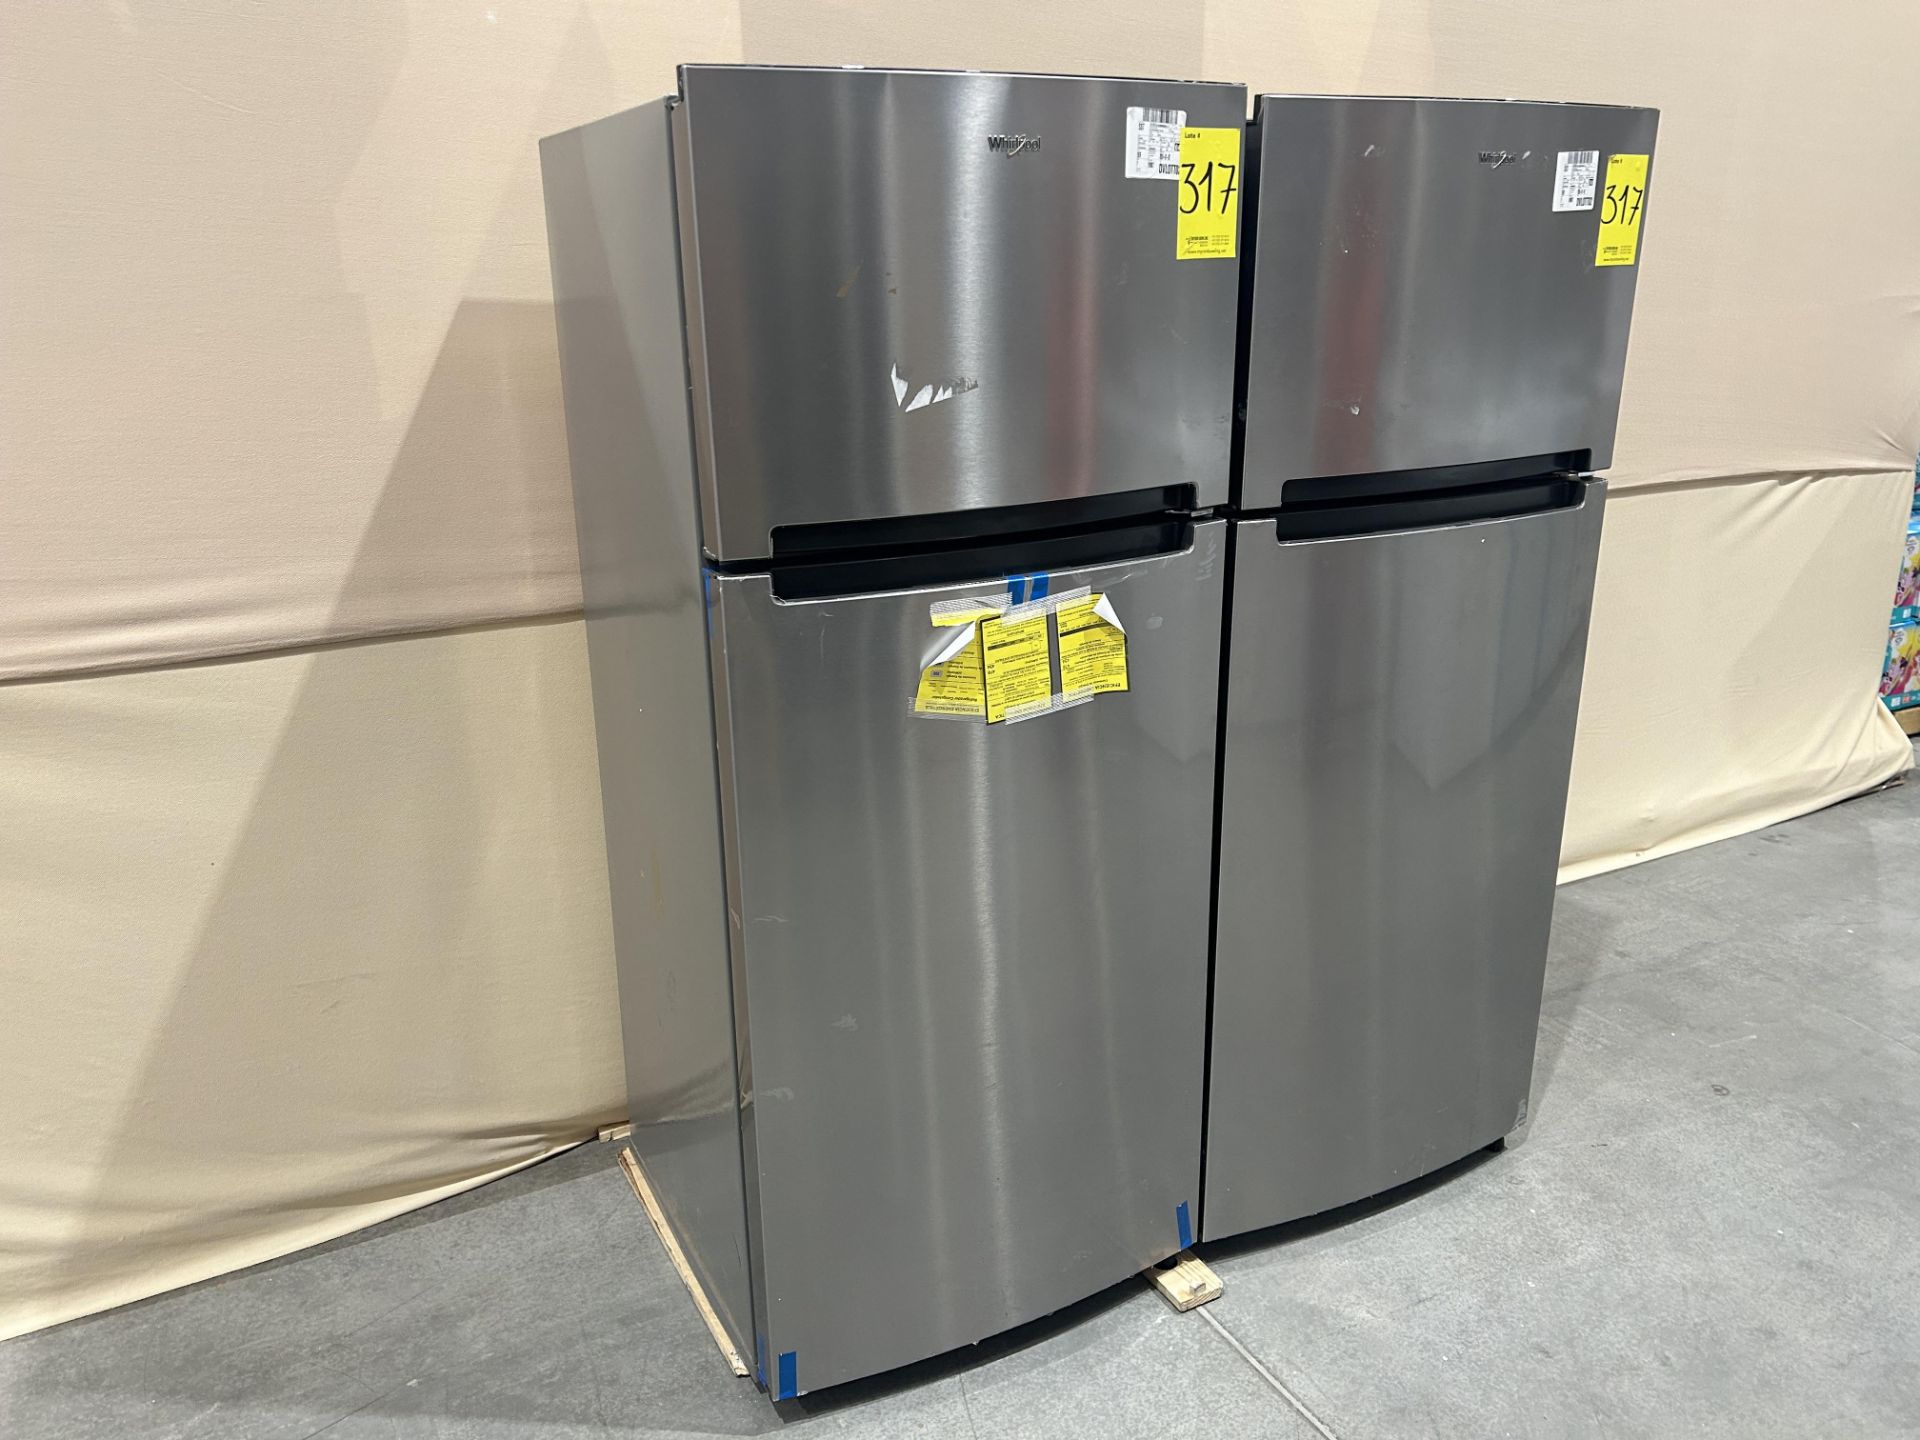 Lote de 2 refrigeradores contiene: 1 refrigerador Marca WHIRLPOOL, Modelo WT1818A, Serie 535500, Co - Image 3 of 6